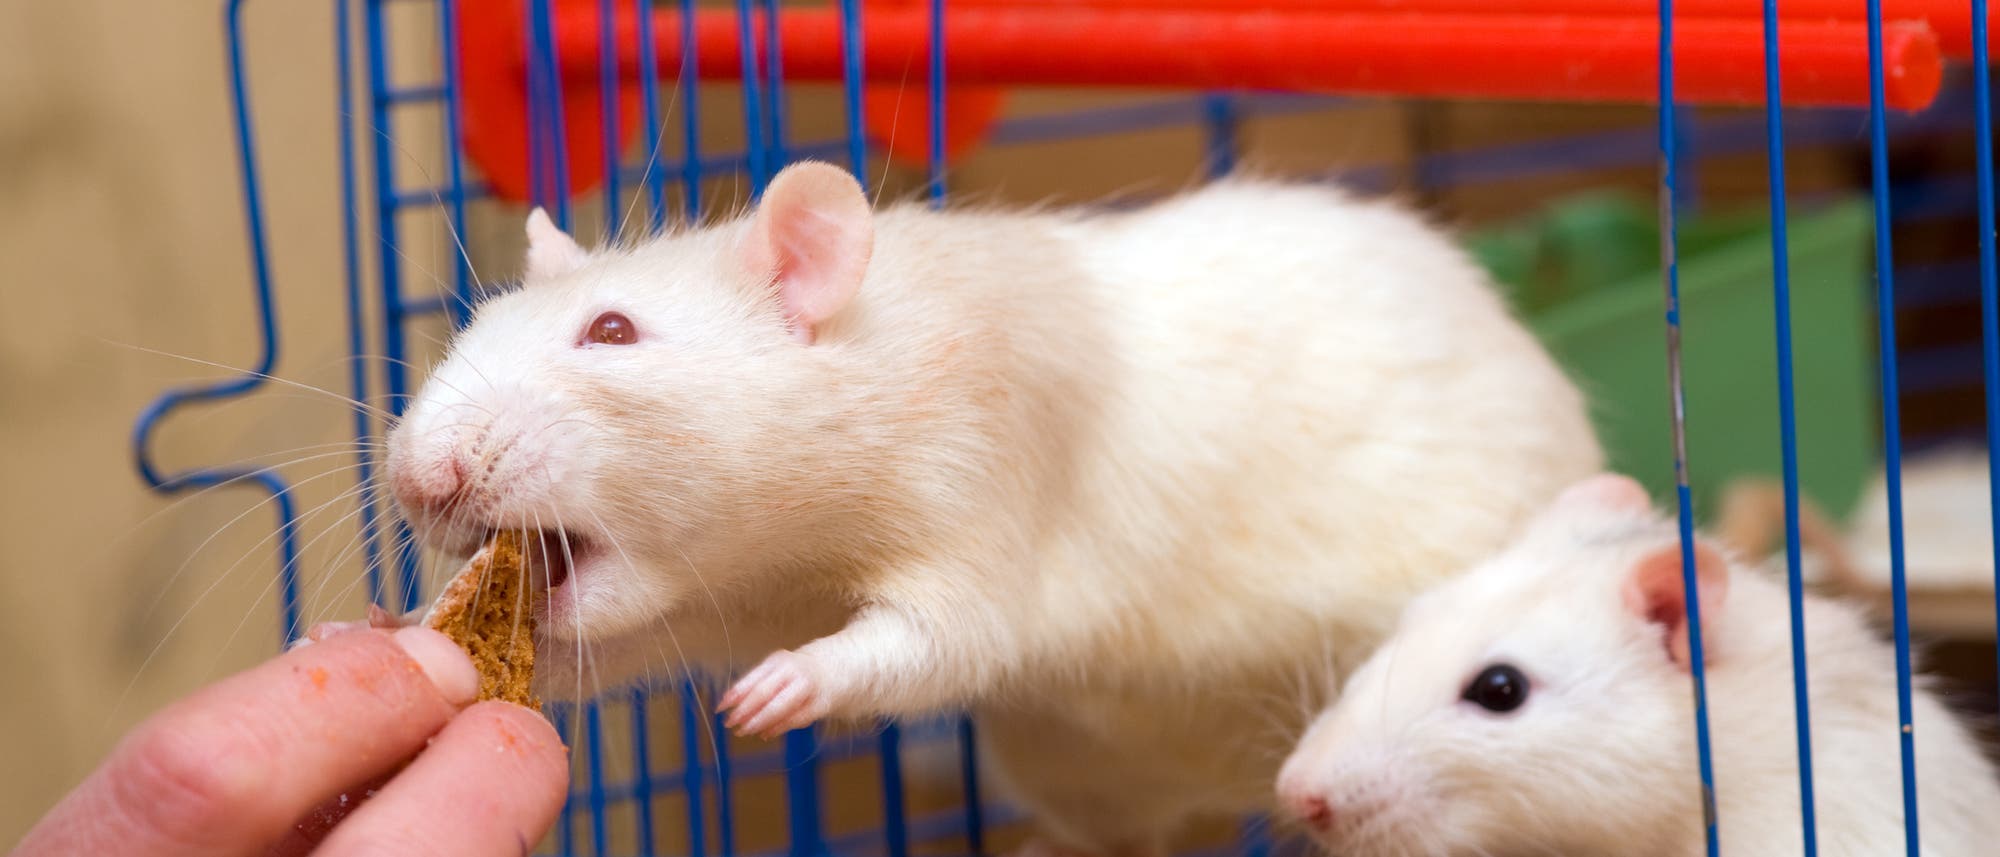 Wofür würde eine Ratte sterben? Für kalorienreiche Lebensmittel